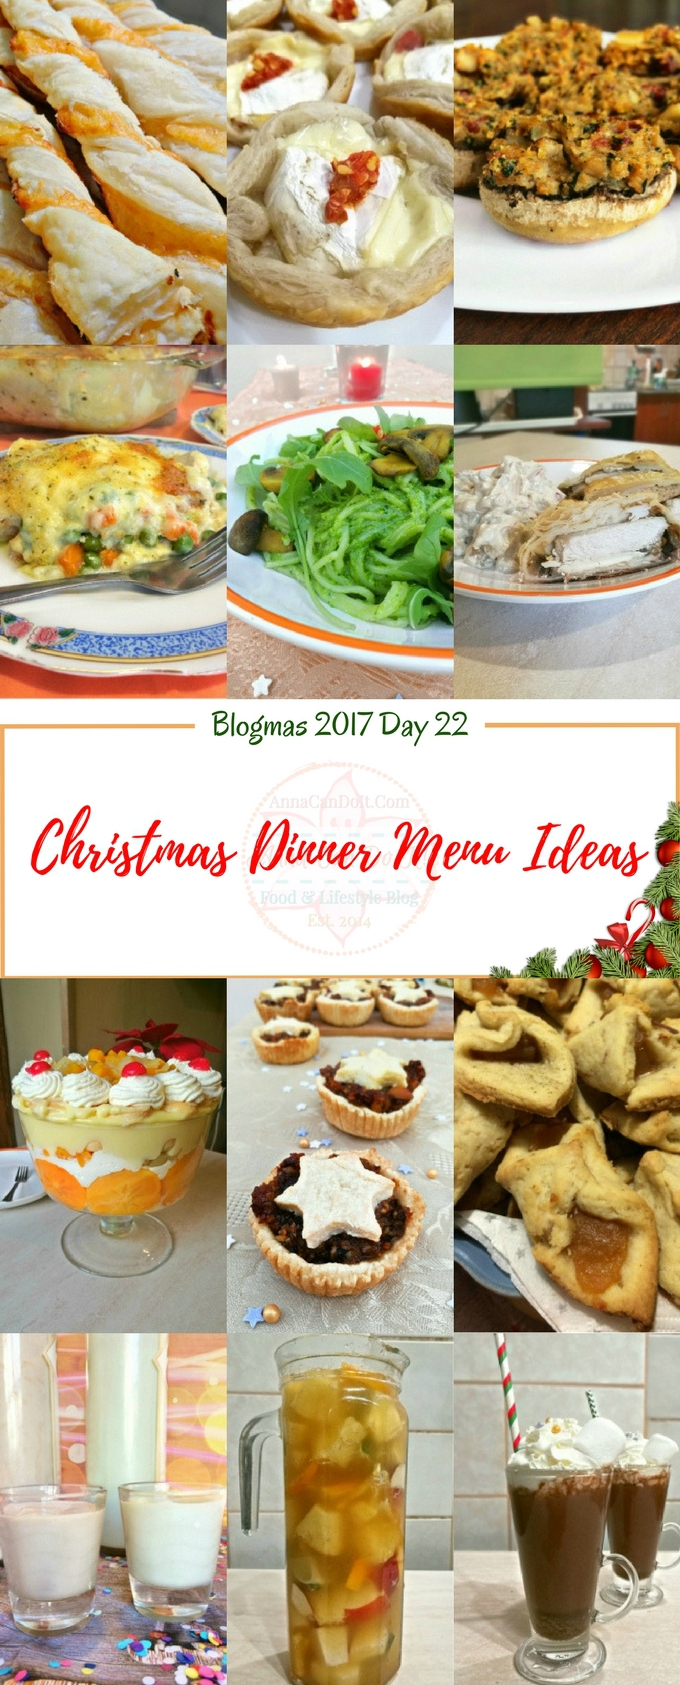 Christmas Dinner Menu Ideas - Blogmas 2017 Day 22 - Anna Can Do It!